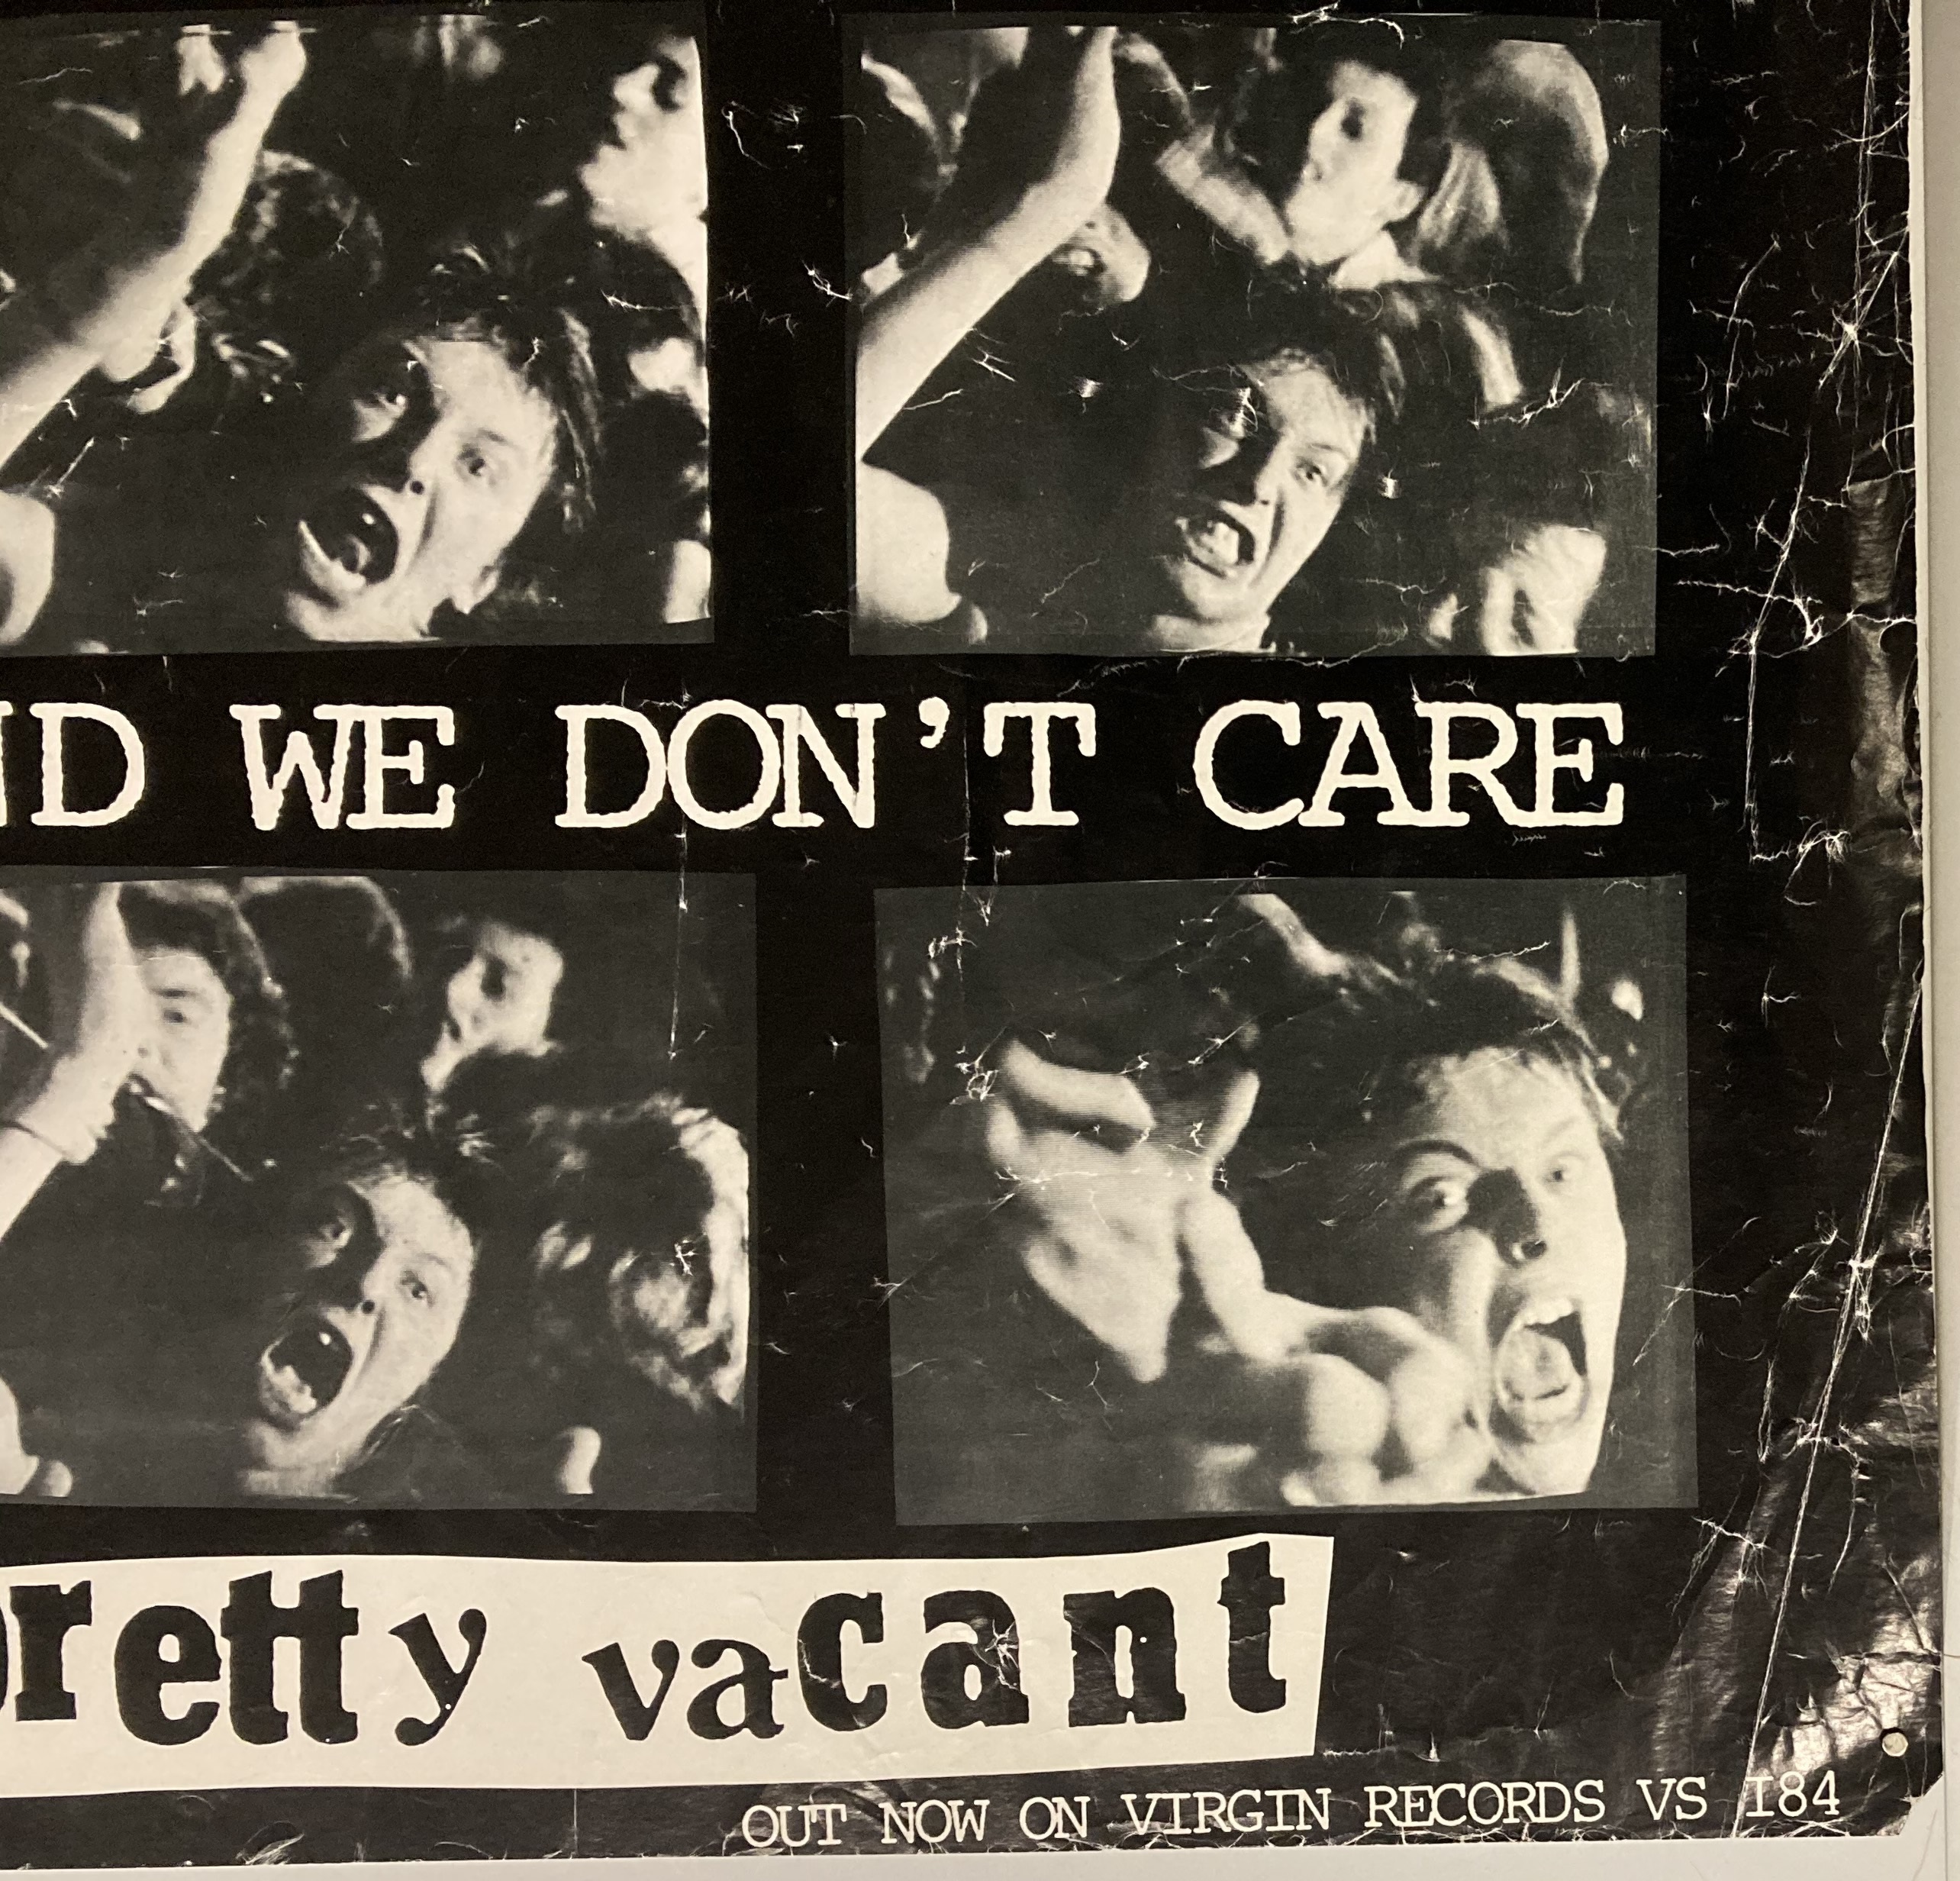 Lot 251 Sex Pistols Pretty Vacant Original Poster